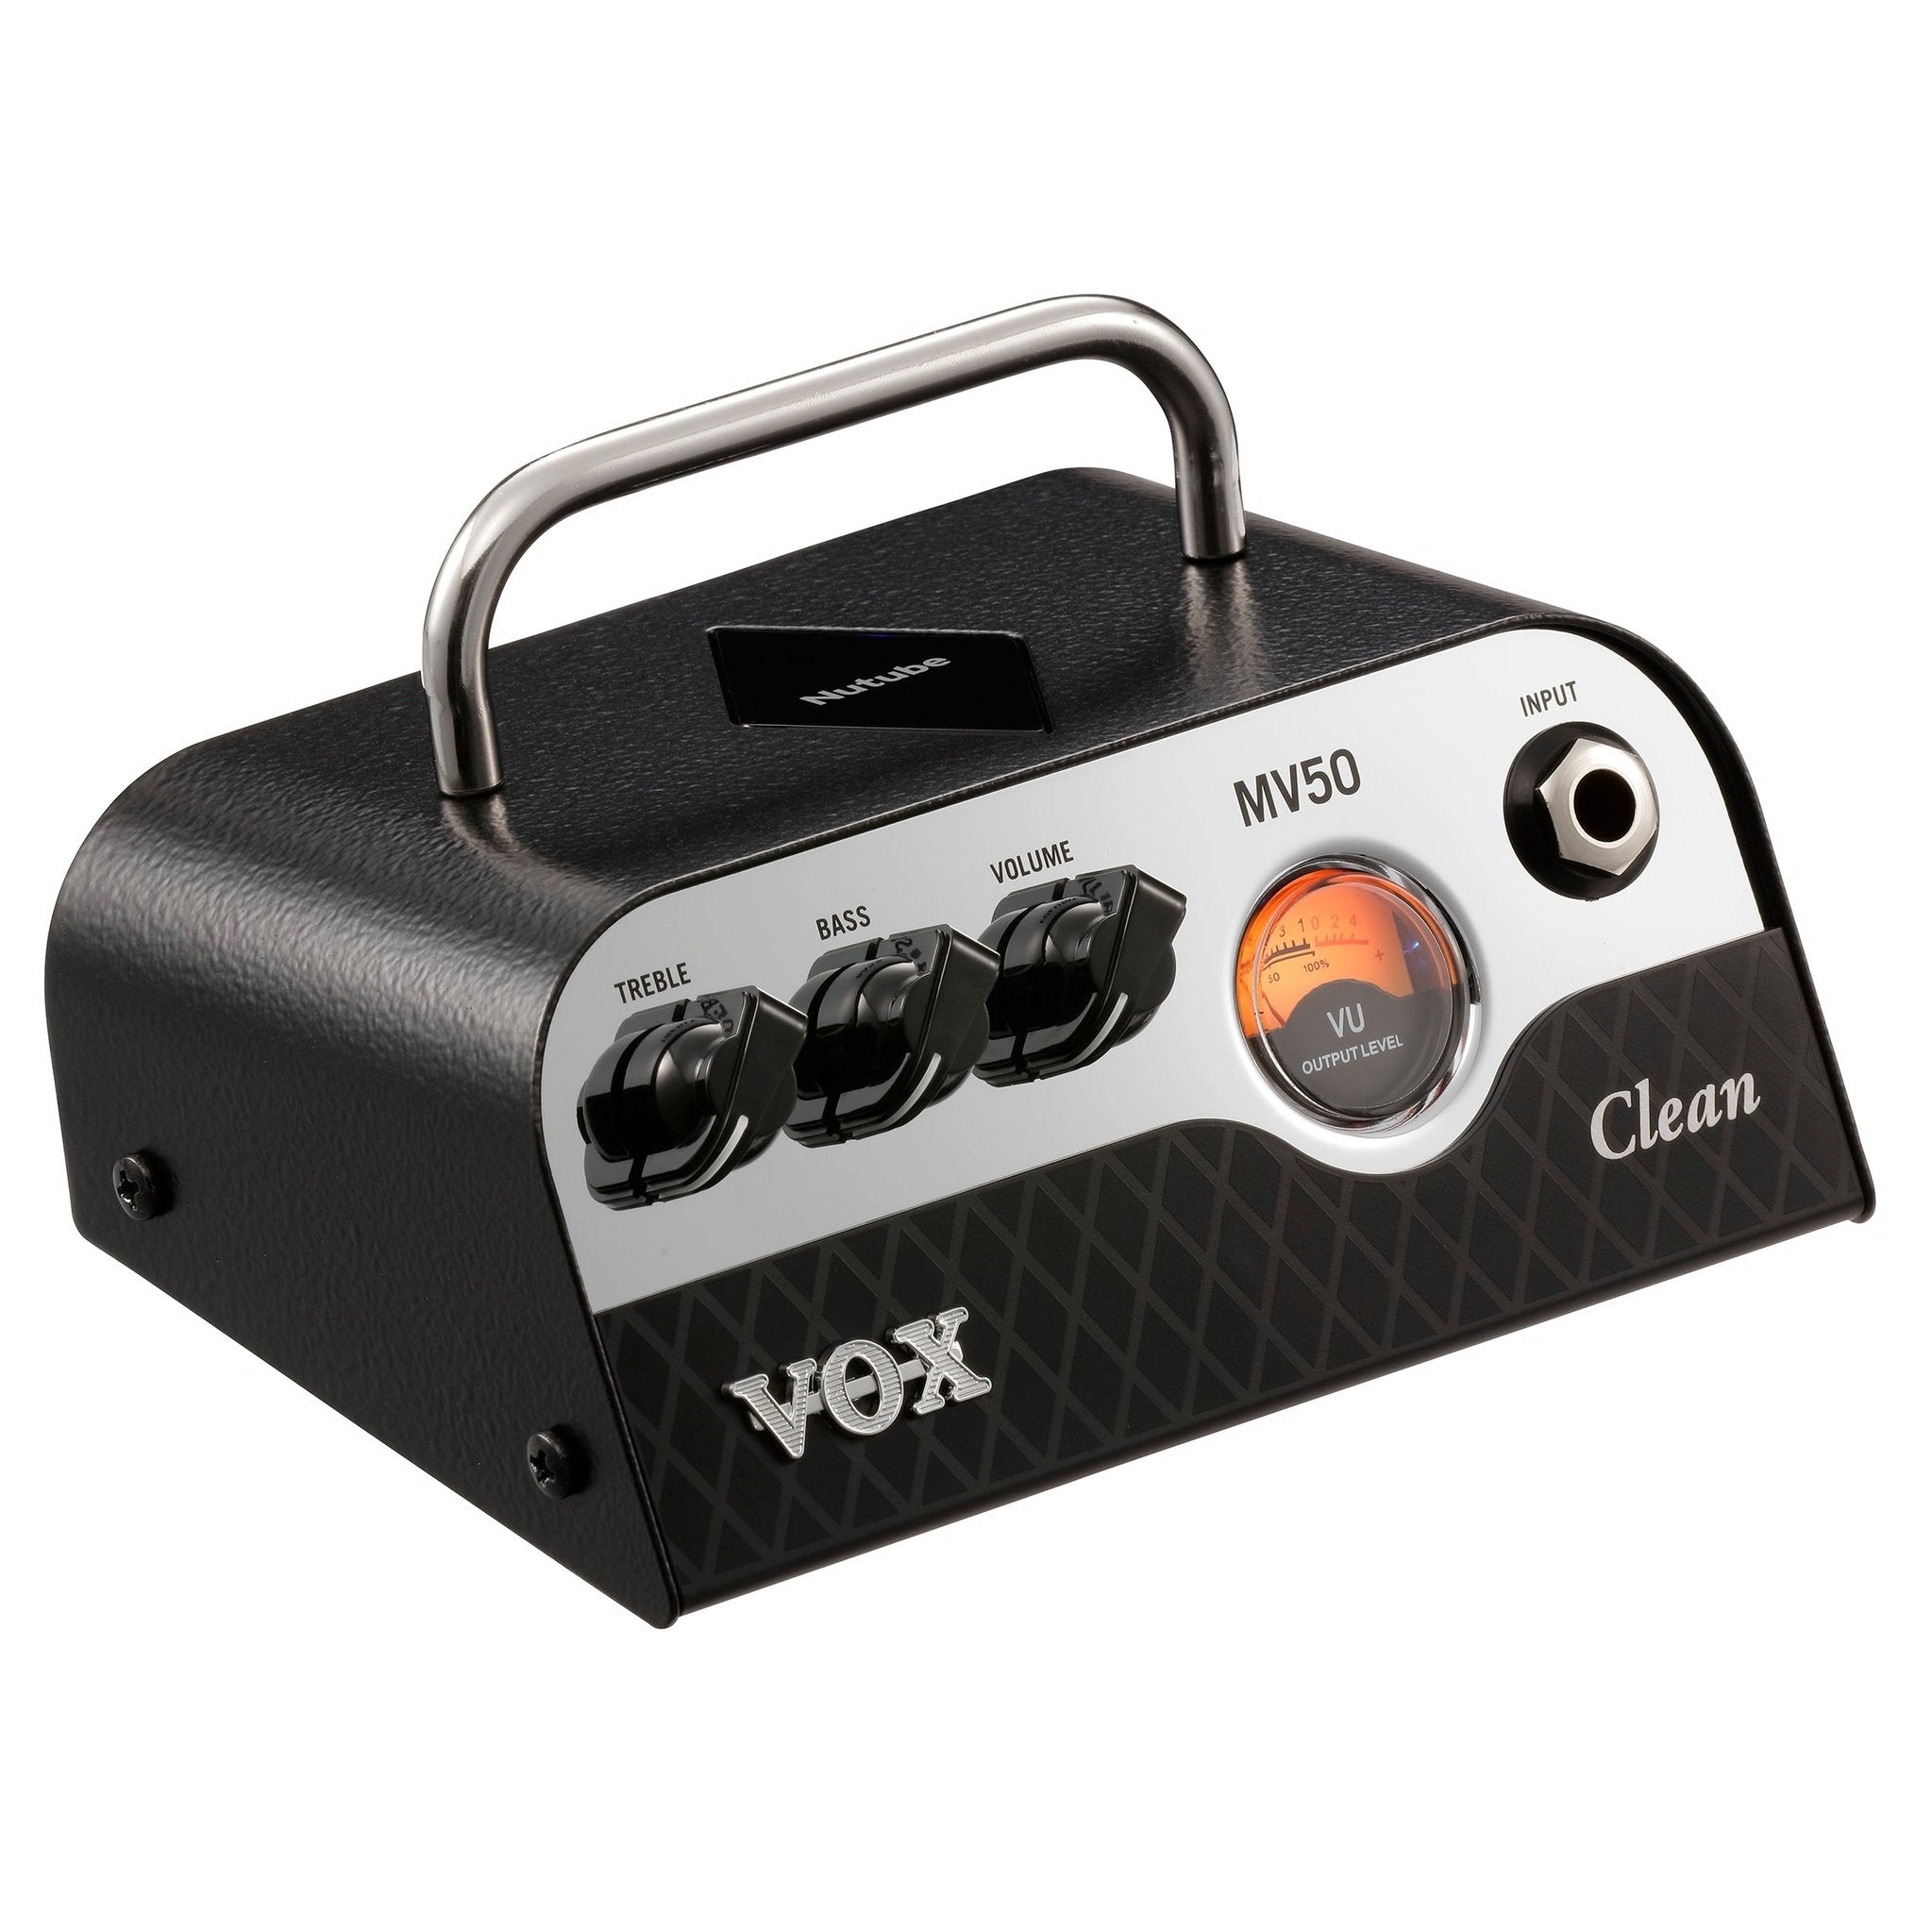 Vox MV50 Guitar Amp Head - CLEAN 2